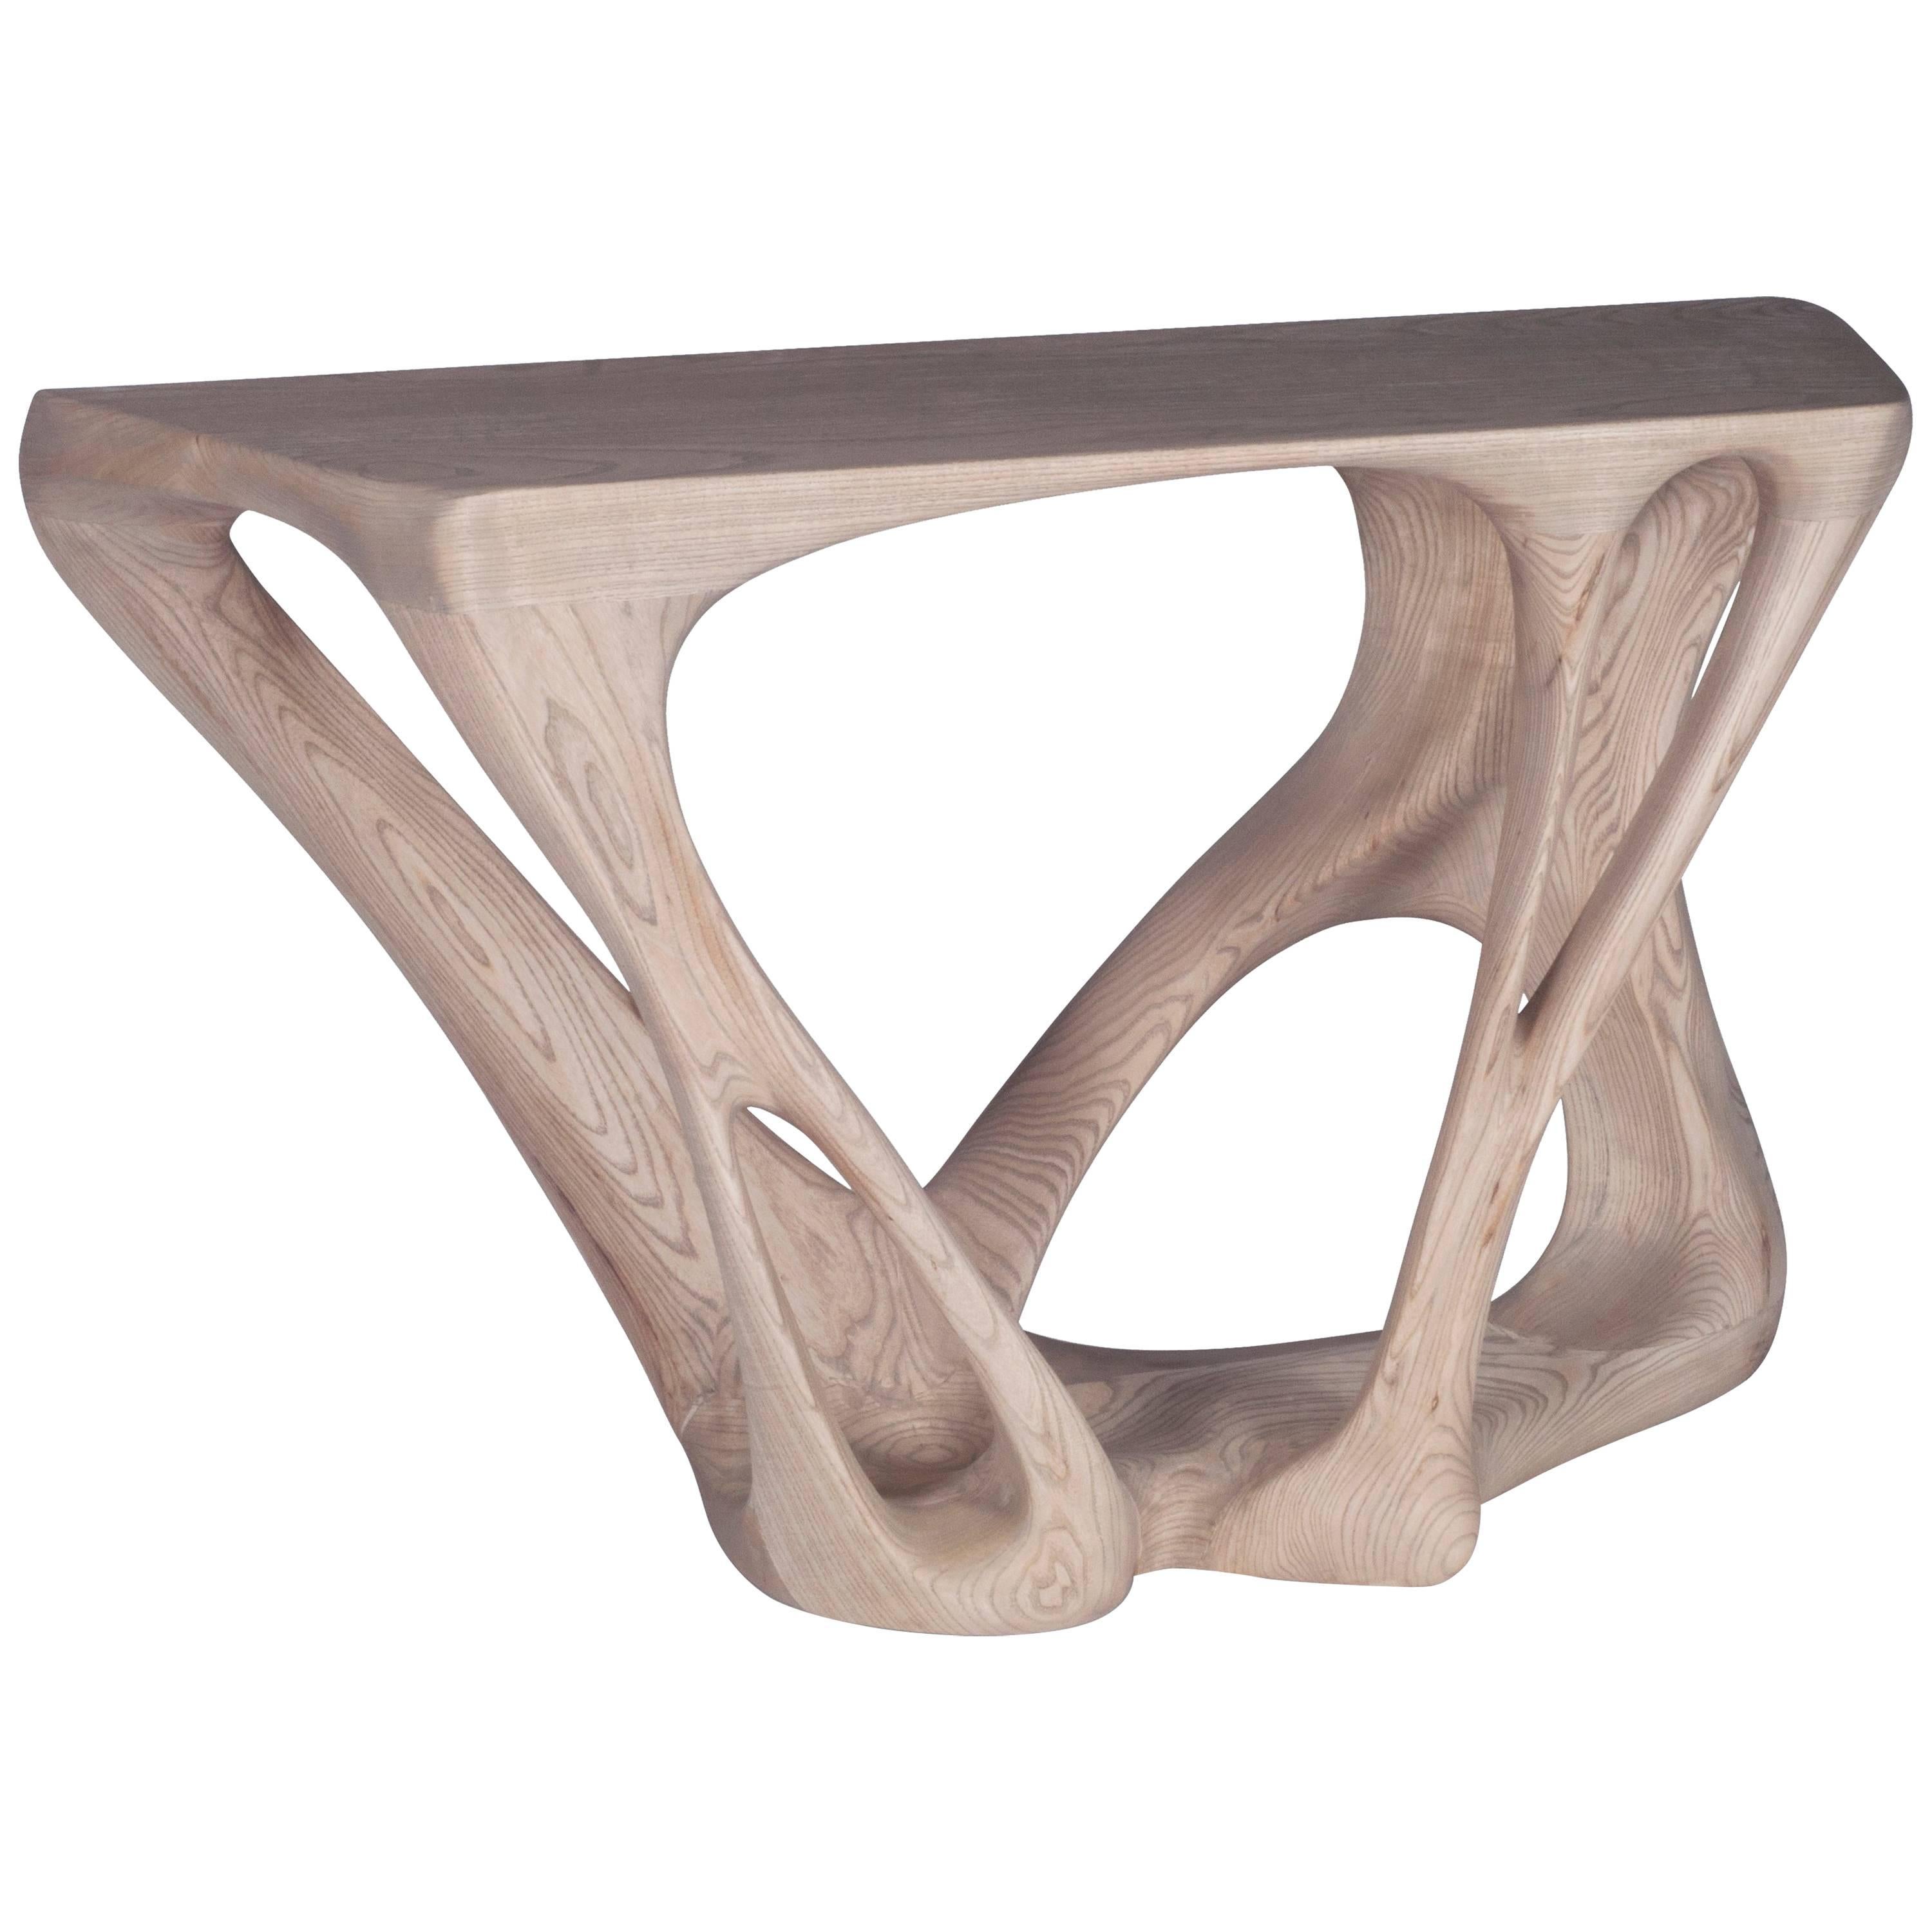 Table console moderne Petra de Amorph, finition teinte chêne grise sur bois de frêne 